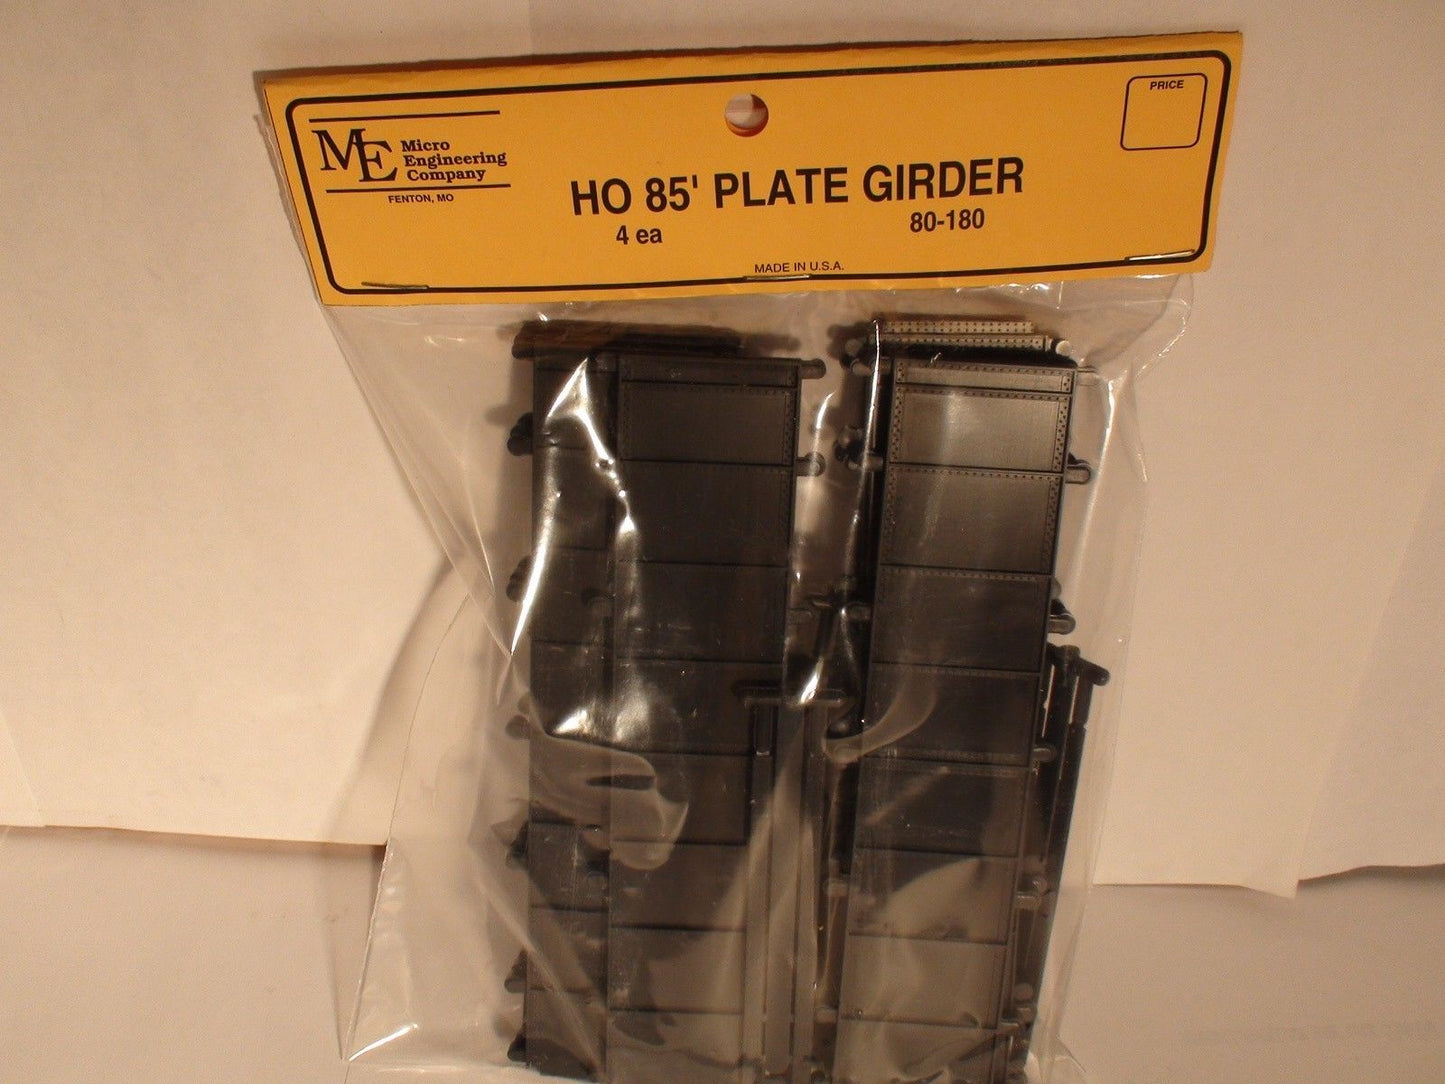 Micro Engineering 80-180 HO 85' Plate Girder (Pack of 4)